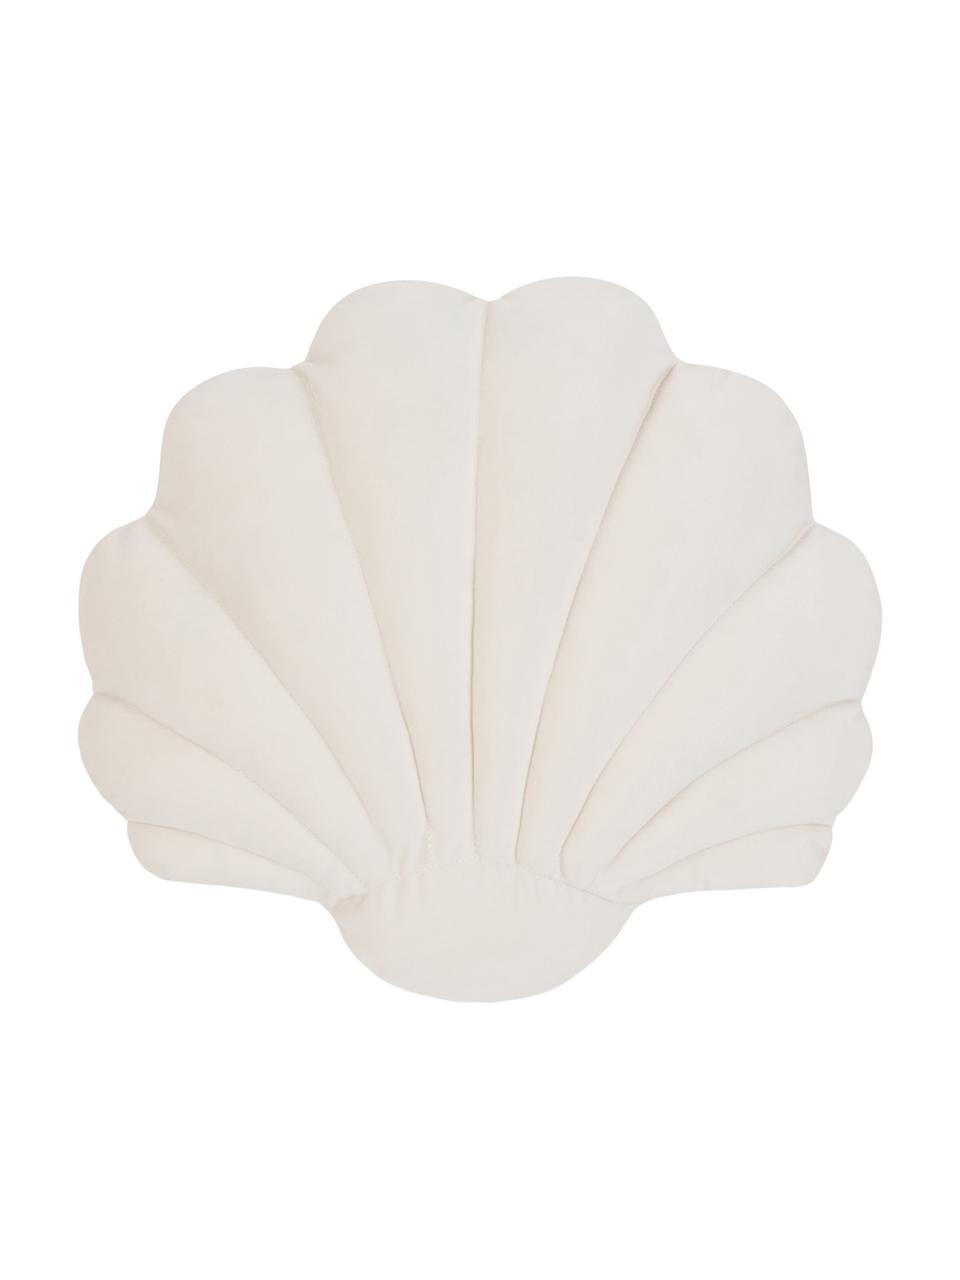 Cuscino in velluto a forma di conchiglia Shell, Retro: 100% cotone, Bianco crema, Larg. 32 x Lung. 27 cm